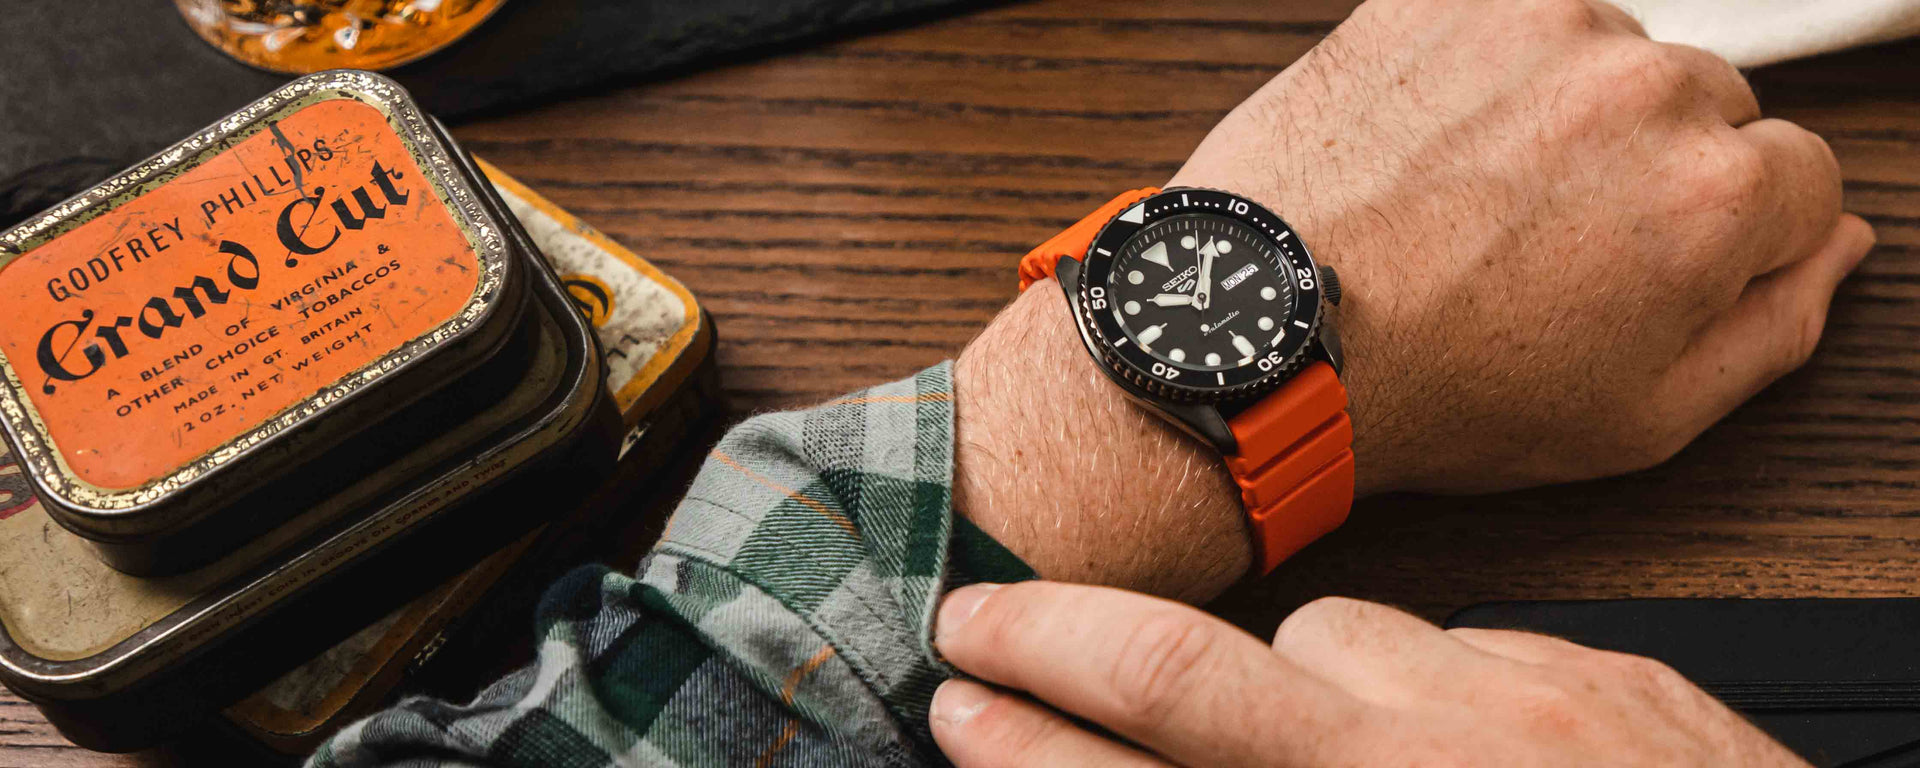 orange watch straps